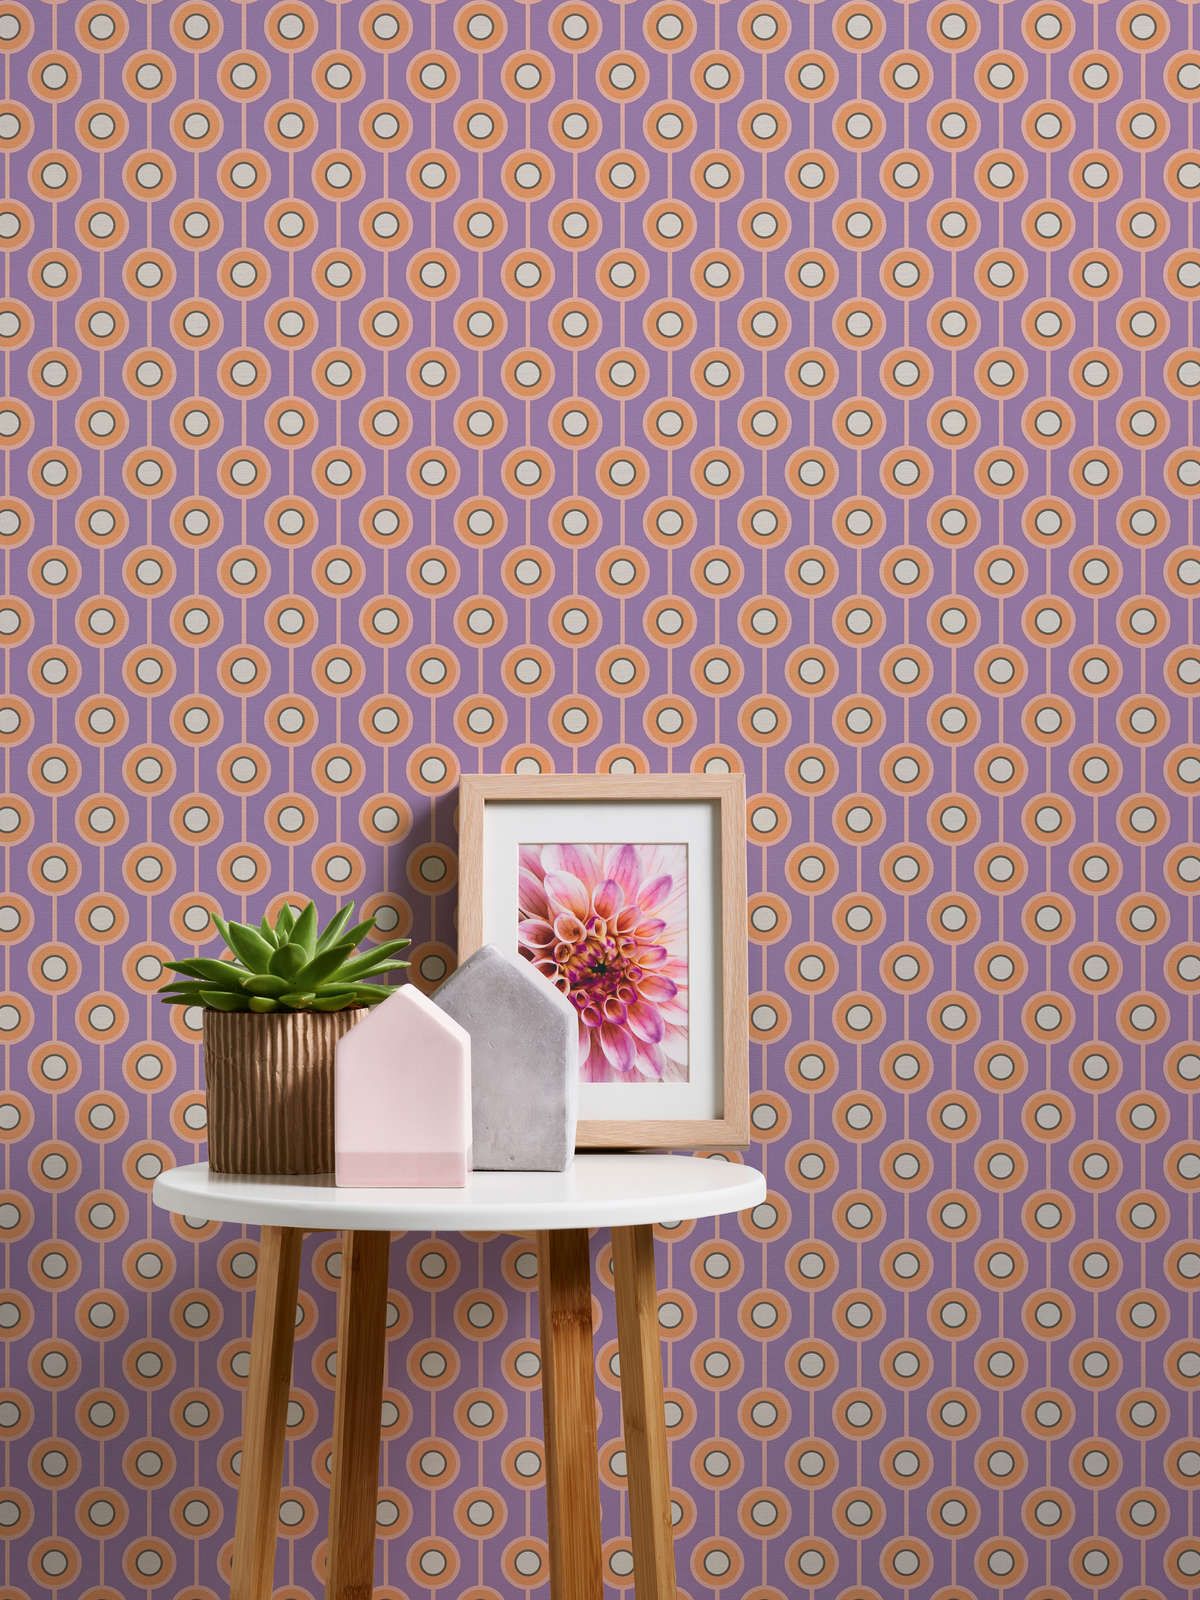             Motif abstrait de cercle sur papier peint intissé de style rétro - violet, orange, beige
        